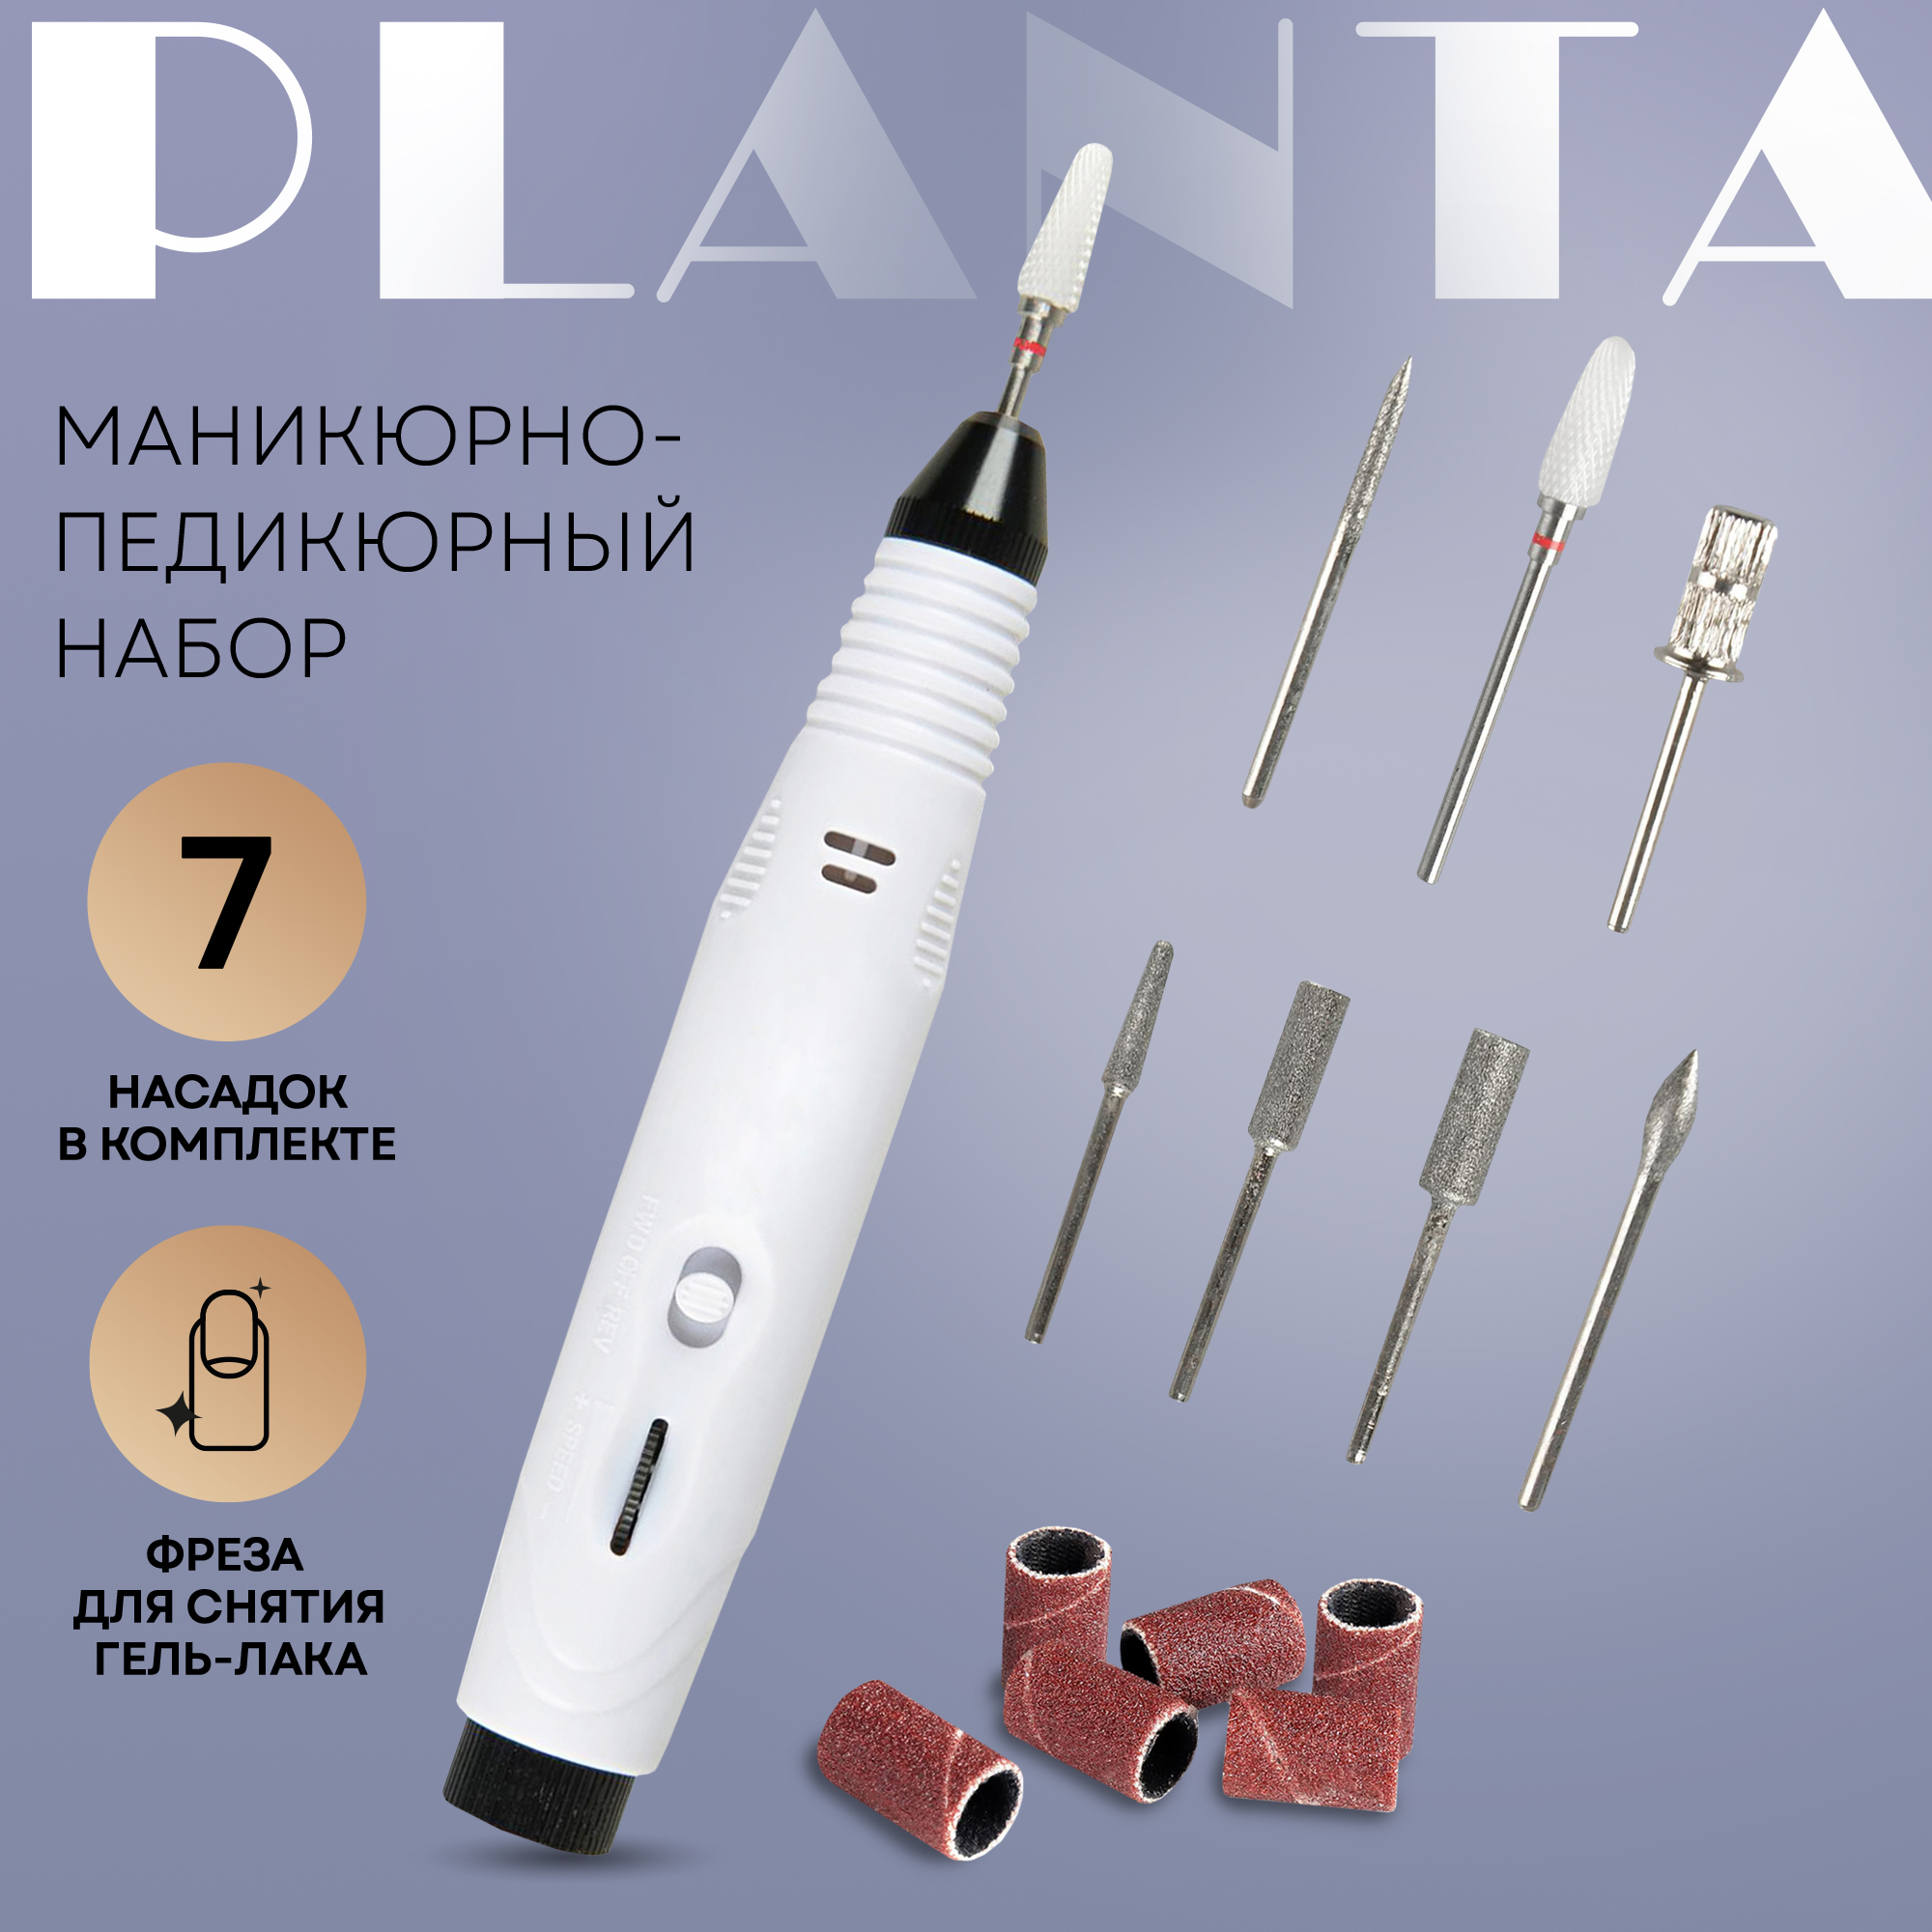 Маникюрный набор Planta PL-MAN15 Master Nail Care Black/White